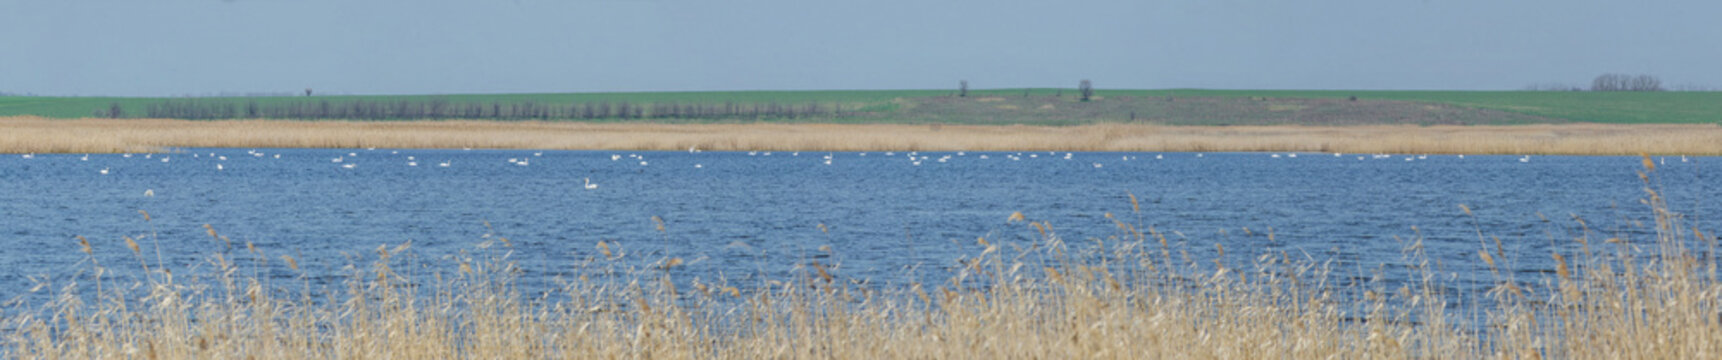 Panorama of the swan lake